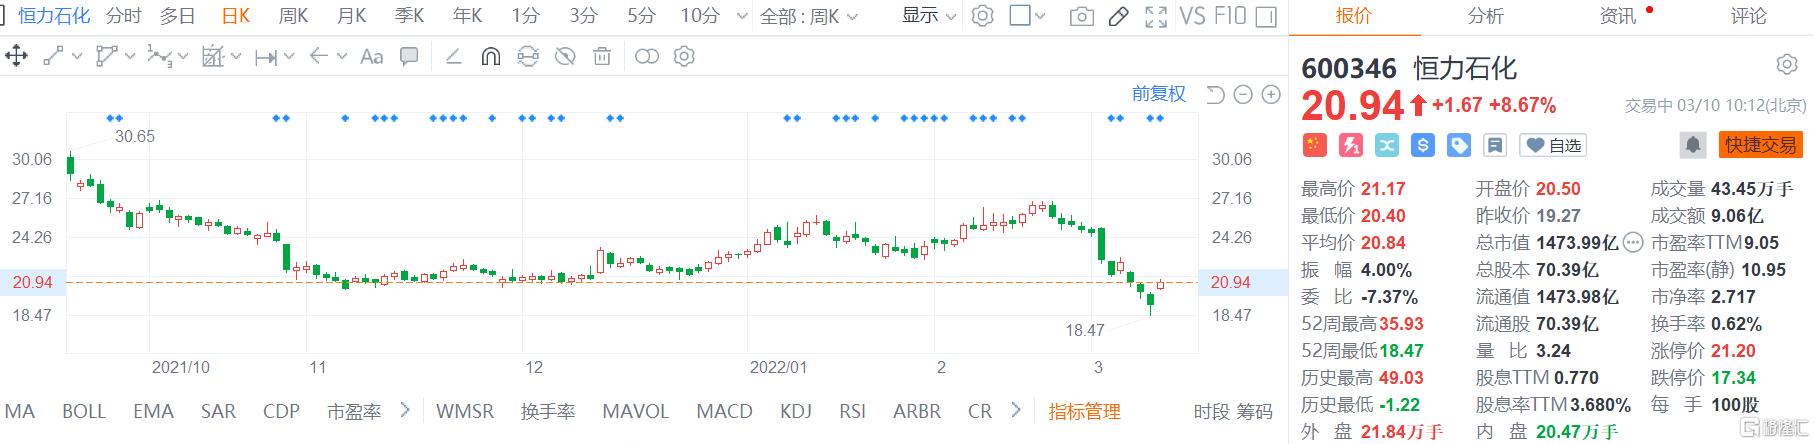 恒力石化(600346.SH)股价回升 现报20.94元涨幅8.67%